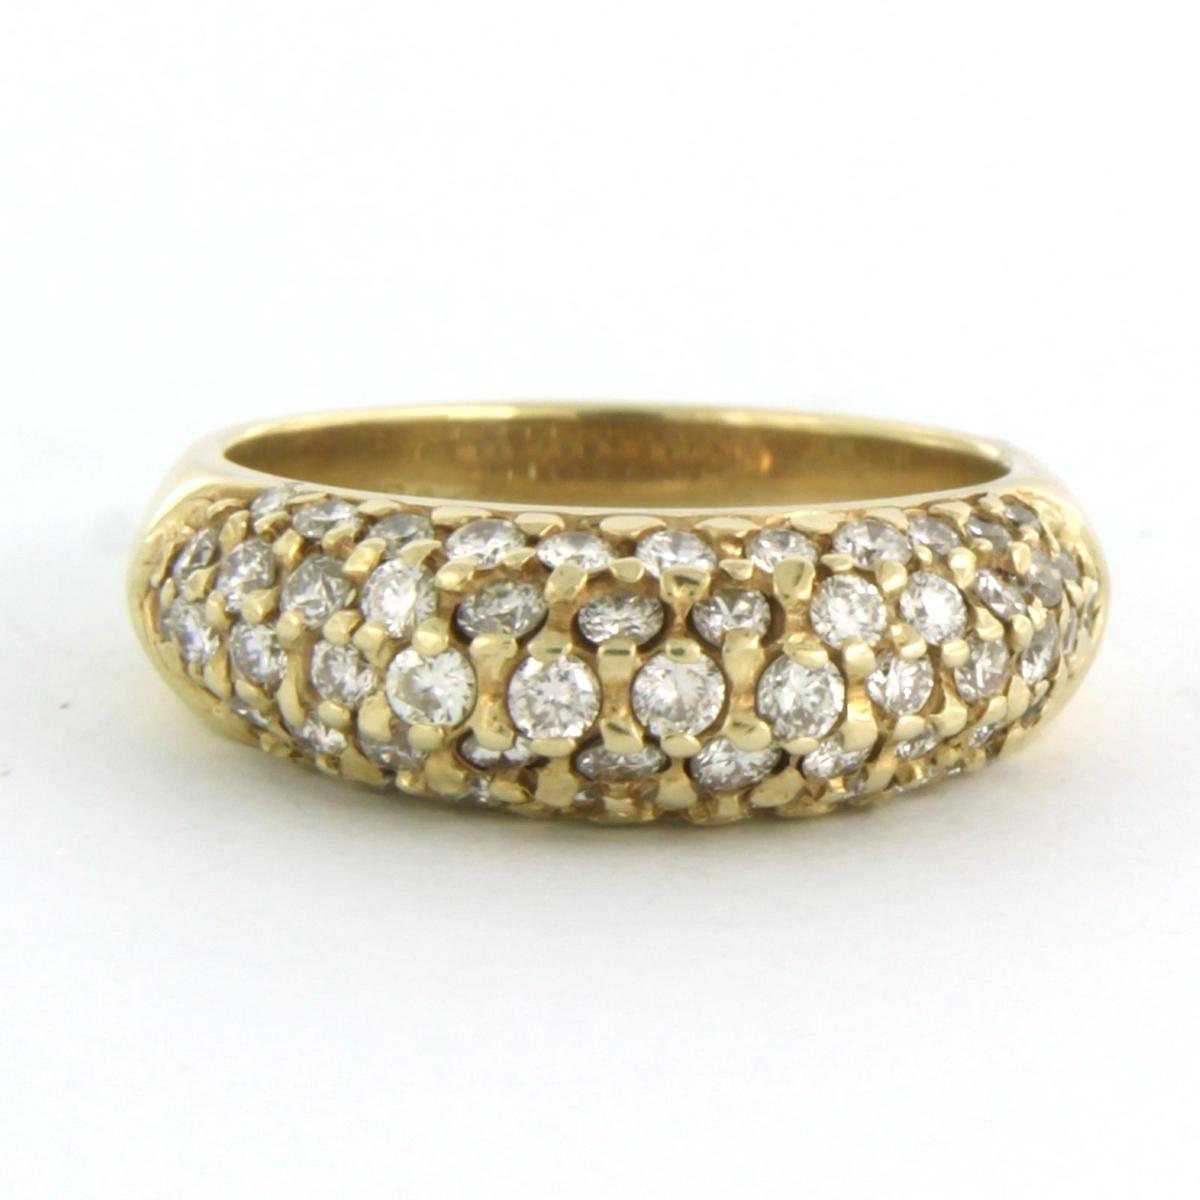 14k Gelbgoldring mit Brillantschliff-Diamant, insgesamt ca. 1.00 ct F/G - VS/SI - Ringgröße U.S. 5.25 - EU.16 (50)

detaillierte Beschreibung:

die Oberseite des Rings ist 6.5 mm breit

Ringgröße US 5.25 - EU.16 (50), Ring kann zum Selbstkostenpreis